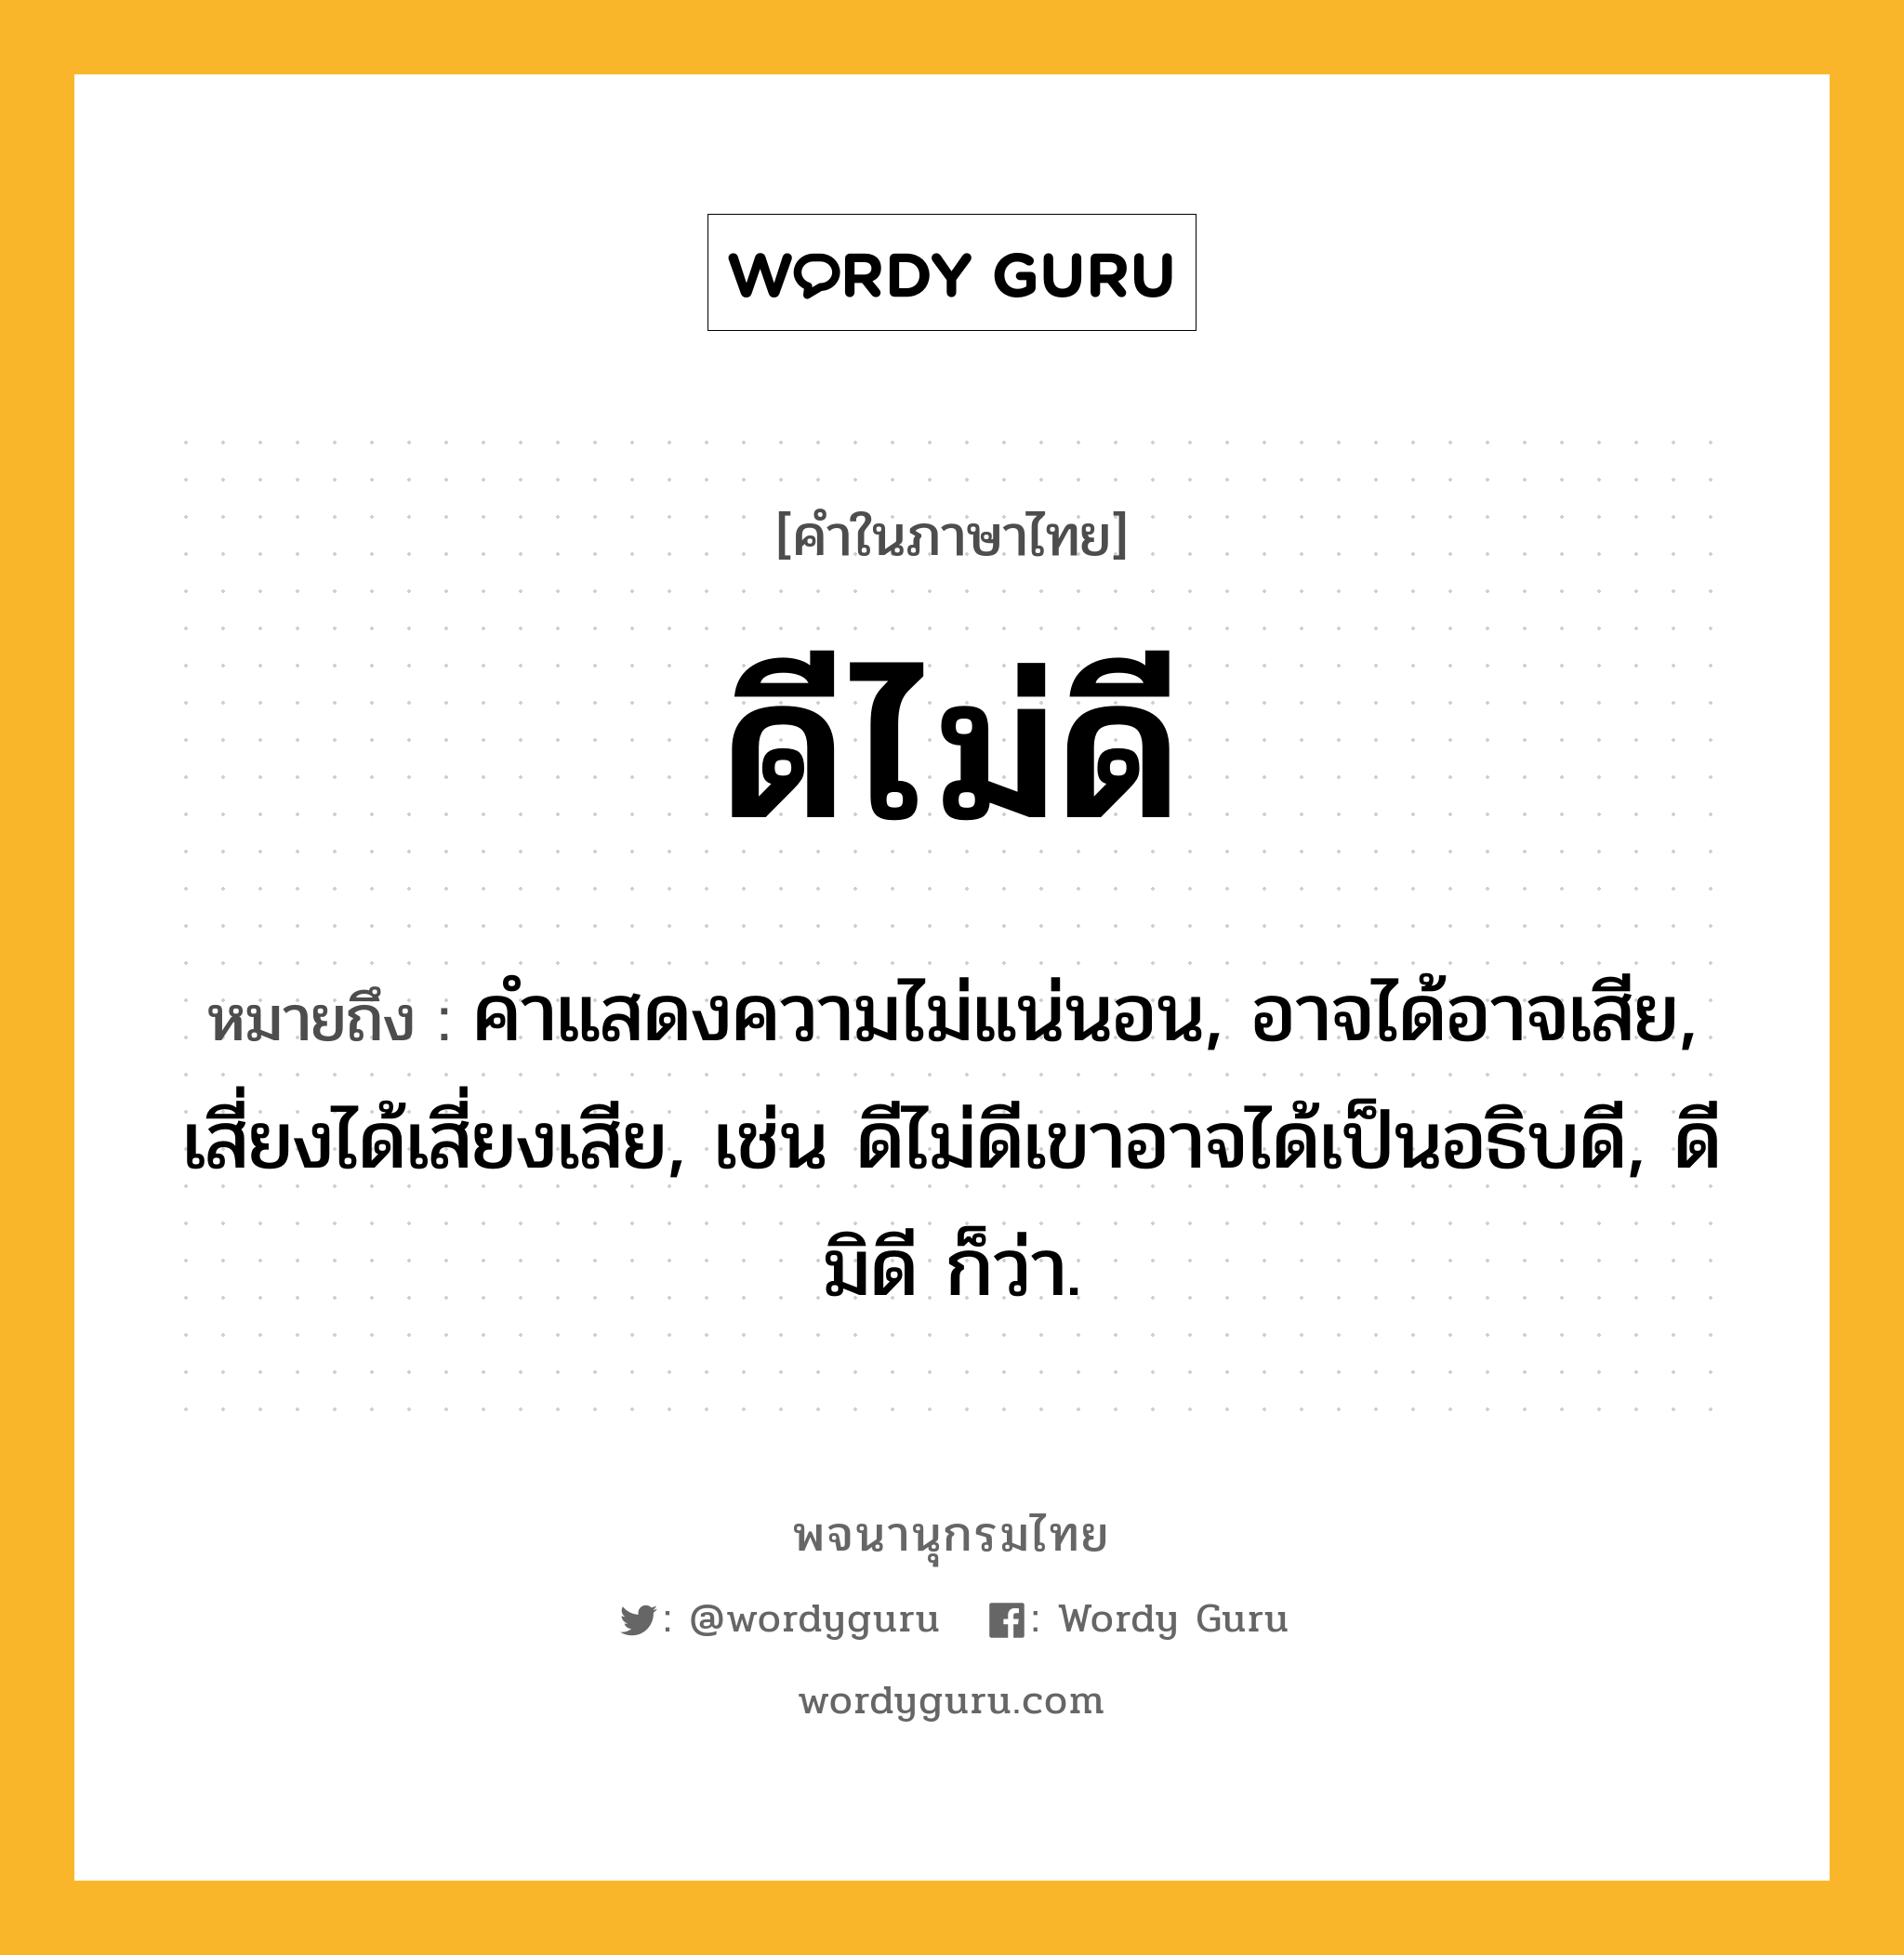 ดีไม่ดี ความหมาย หมายถึงอะไร?, คำในภาษาไทย ดีไม่ดี หมายถึง คําแสดงความไม่แน่นอน, อาจได้อาจเสีย, เสี่ยงได้เสี่ยงเสีย, เช่น ดีไม่ดีเขาอาจได้เป็นอธิบดี, ดีมิดี ก็ว่า.